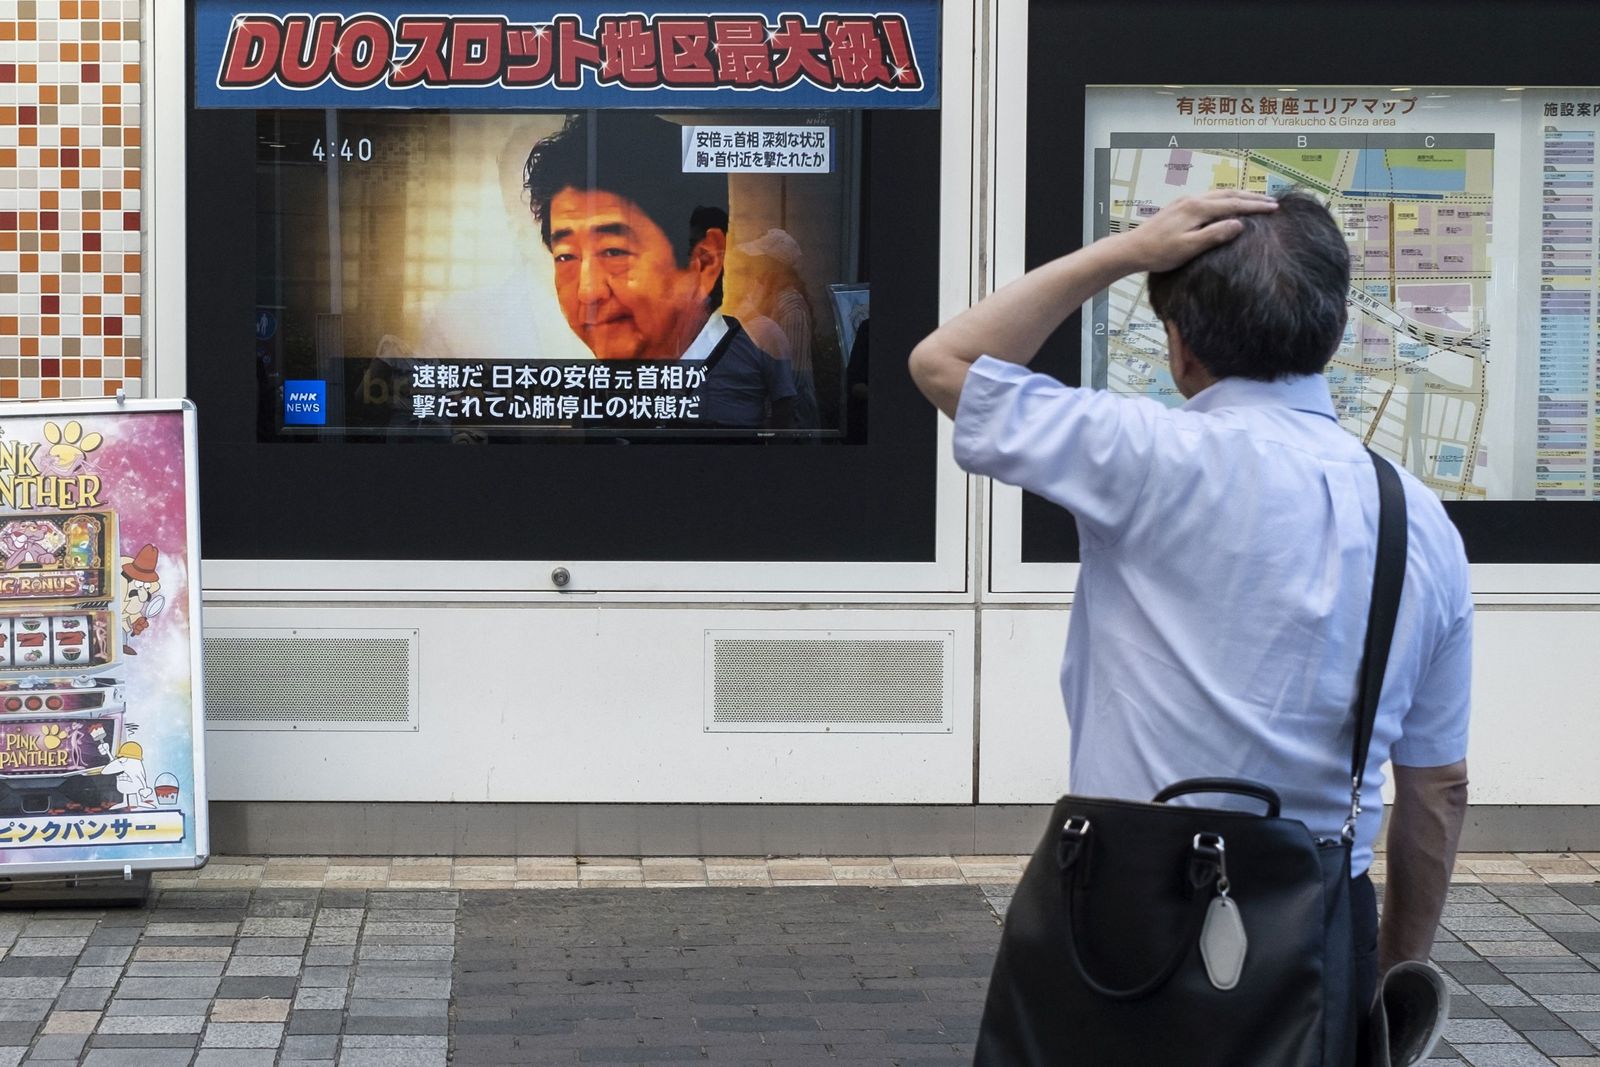 رجل ينظر إلى بث تلفزيوني يعرض أخبارًا عن الهجوم على رئيس الوزراء الياباني السابق شينزو آبي في أحد شوارع طوكيو - 8 يوليو 2022 - AFP